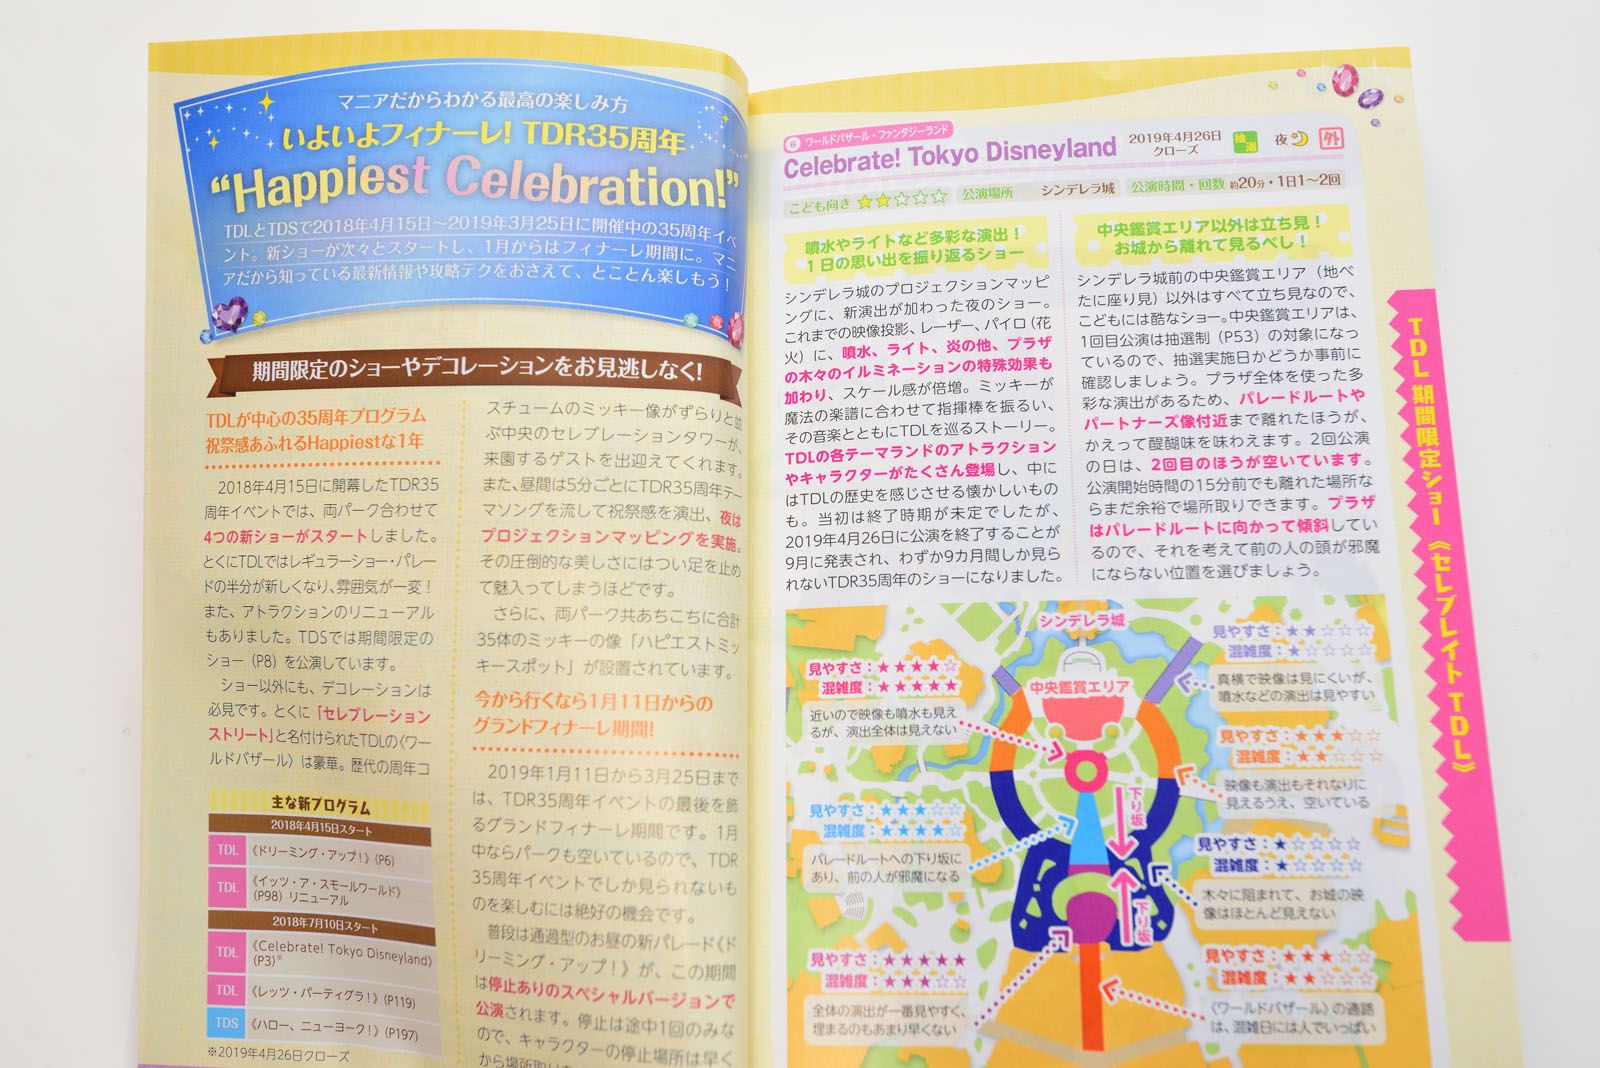 執筆ガイド本の最新版 ポケット版 東京ディズニーランド シー裏技ガイド19 が11月29日発売 Disney Colors Blog